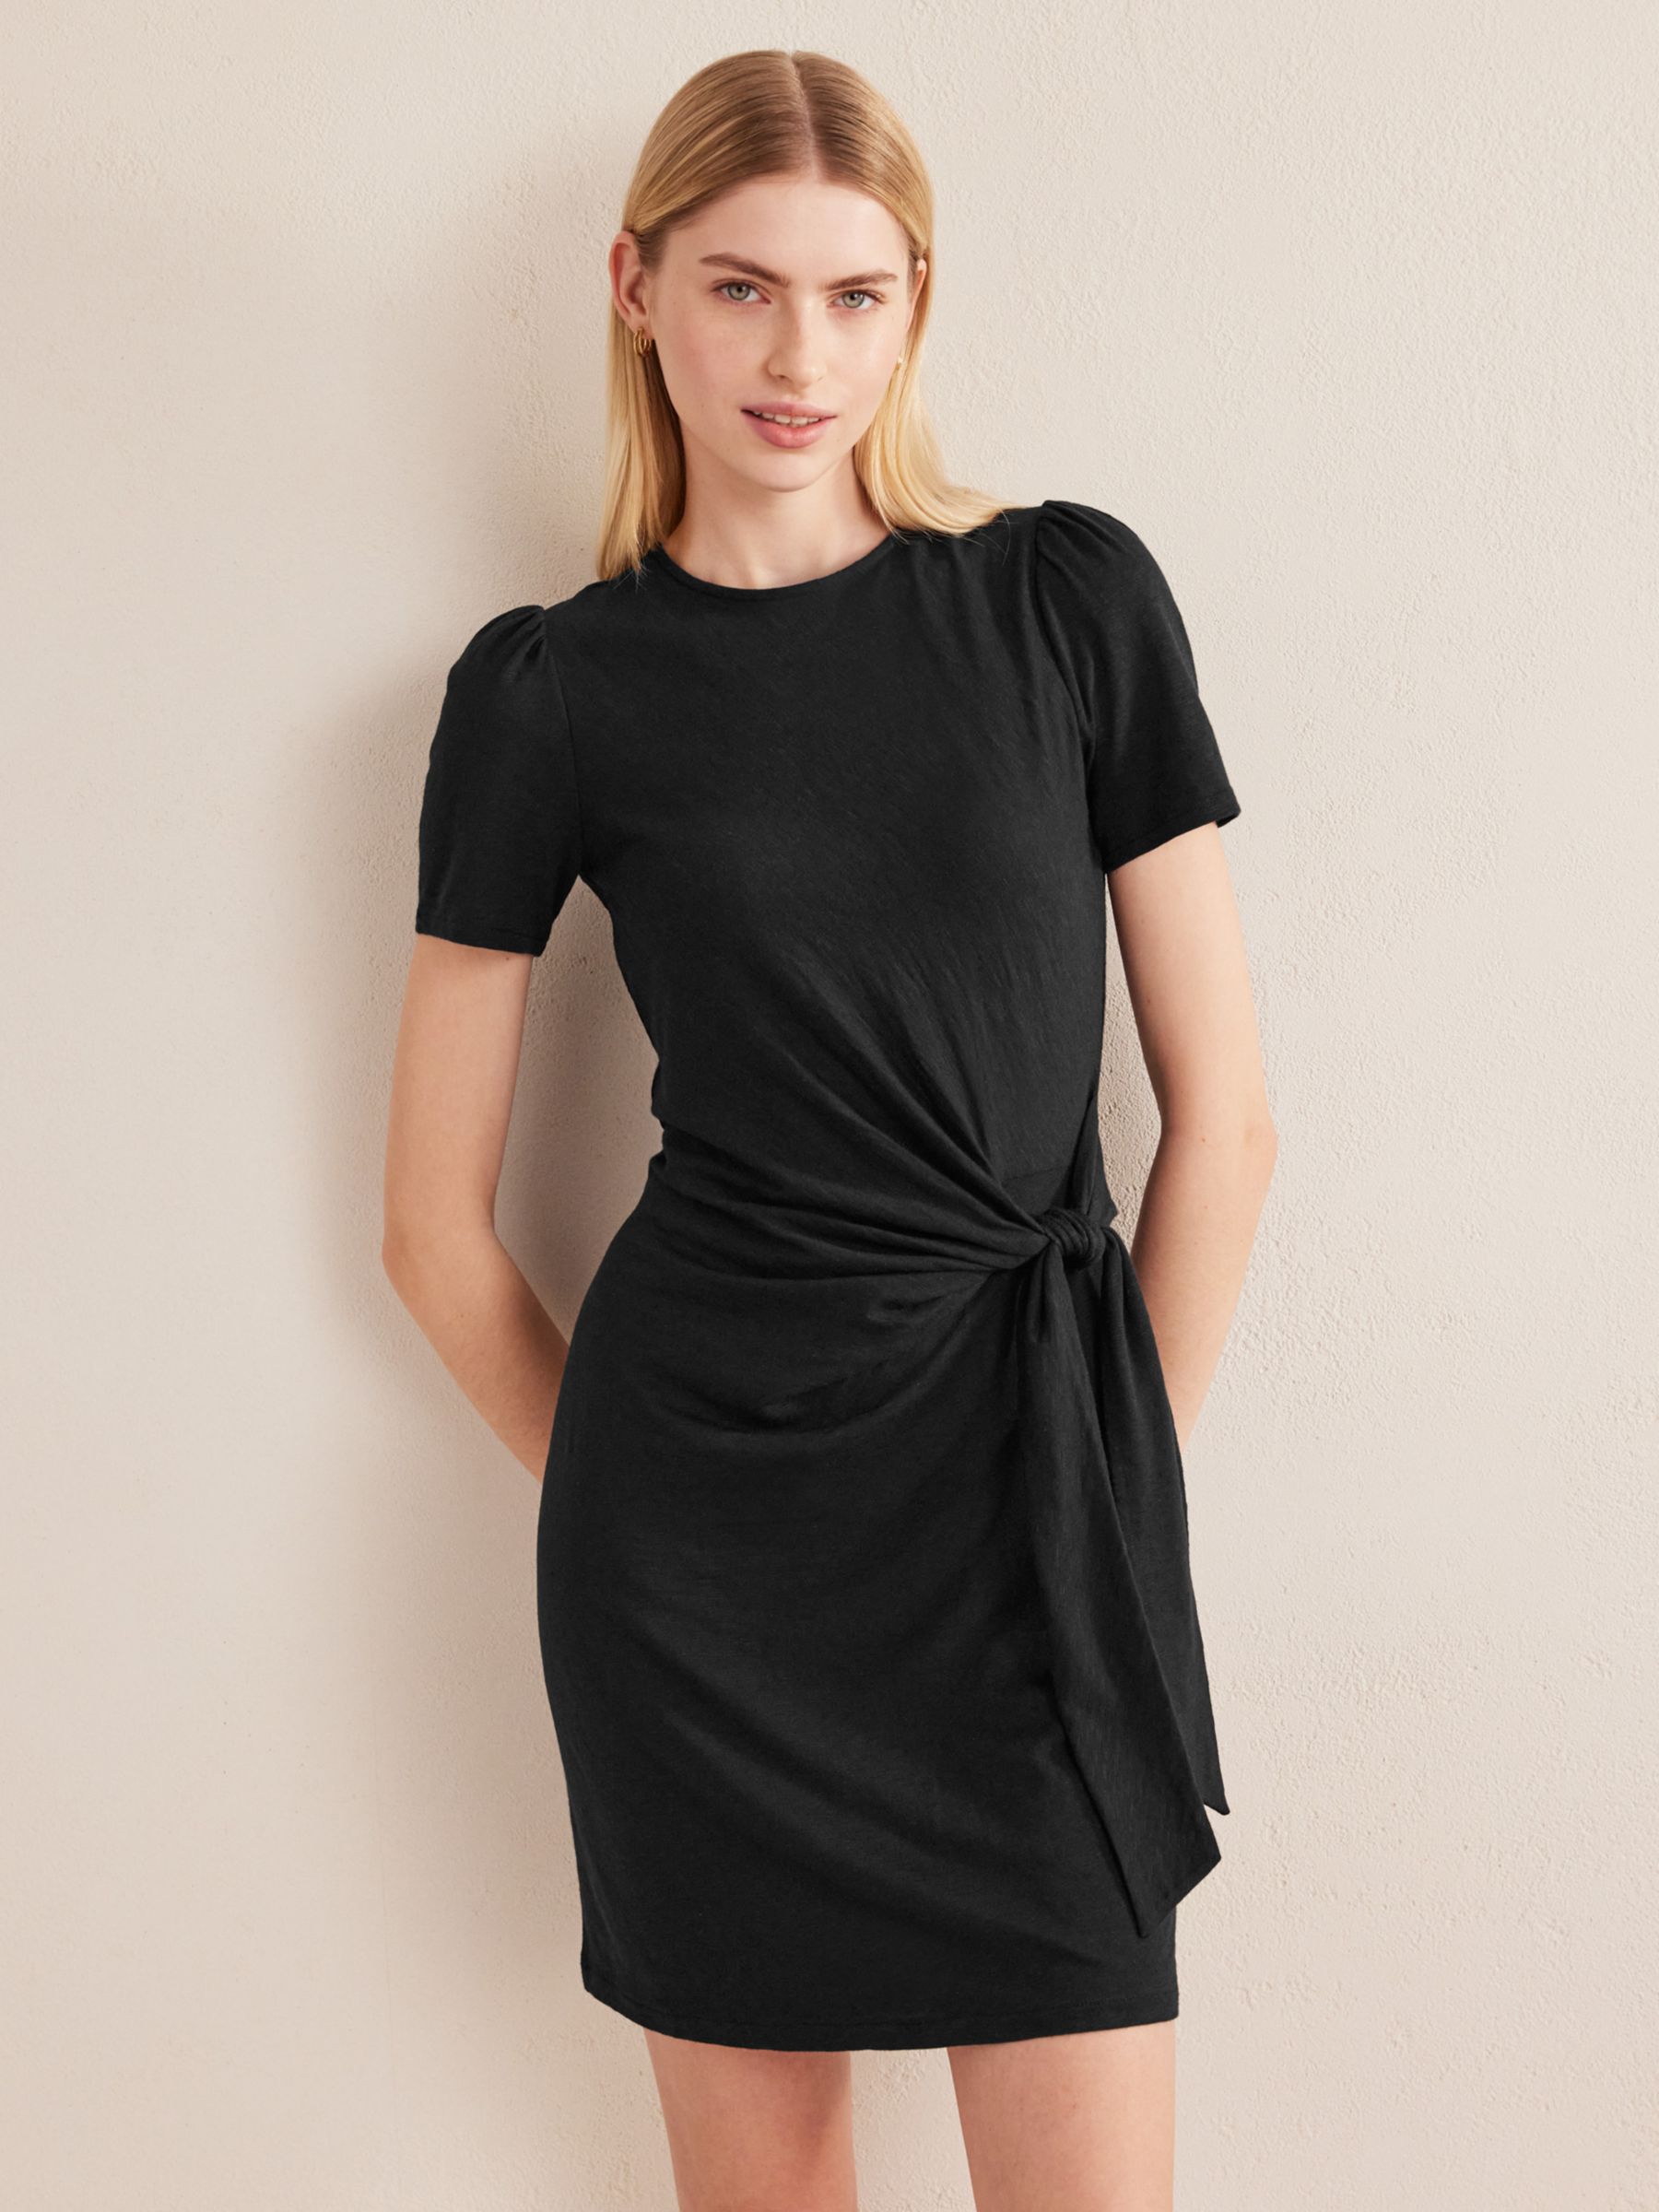 Boden Knot Front Cotton Dress, Black, 8